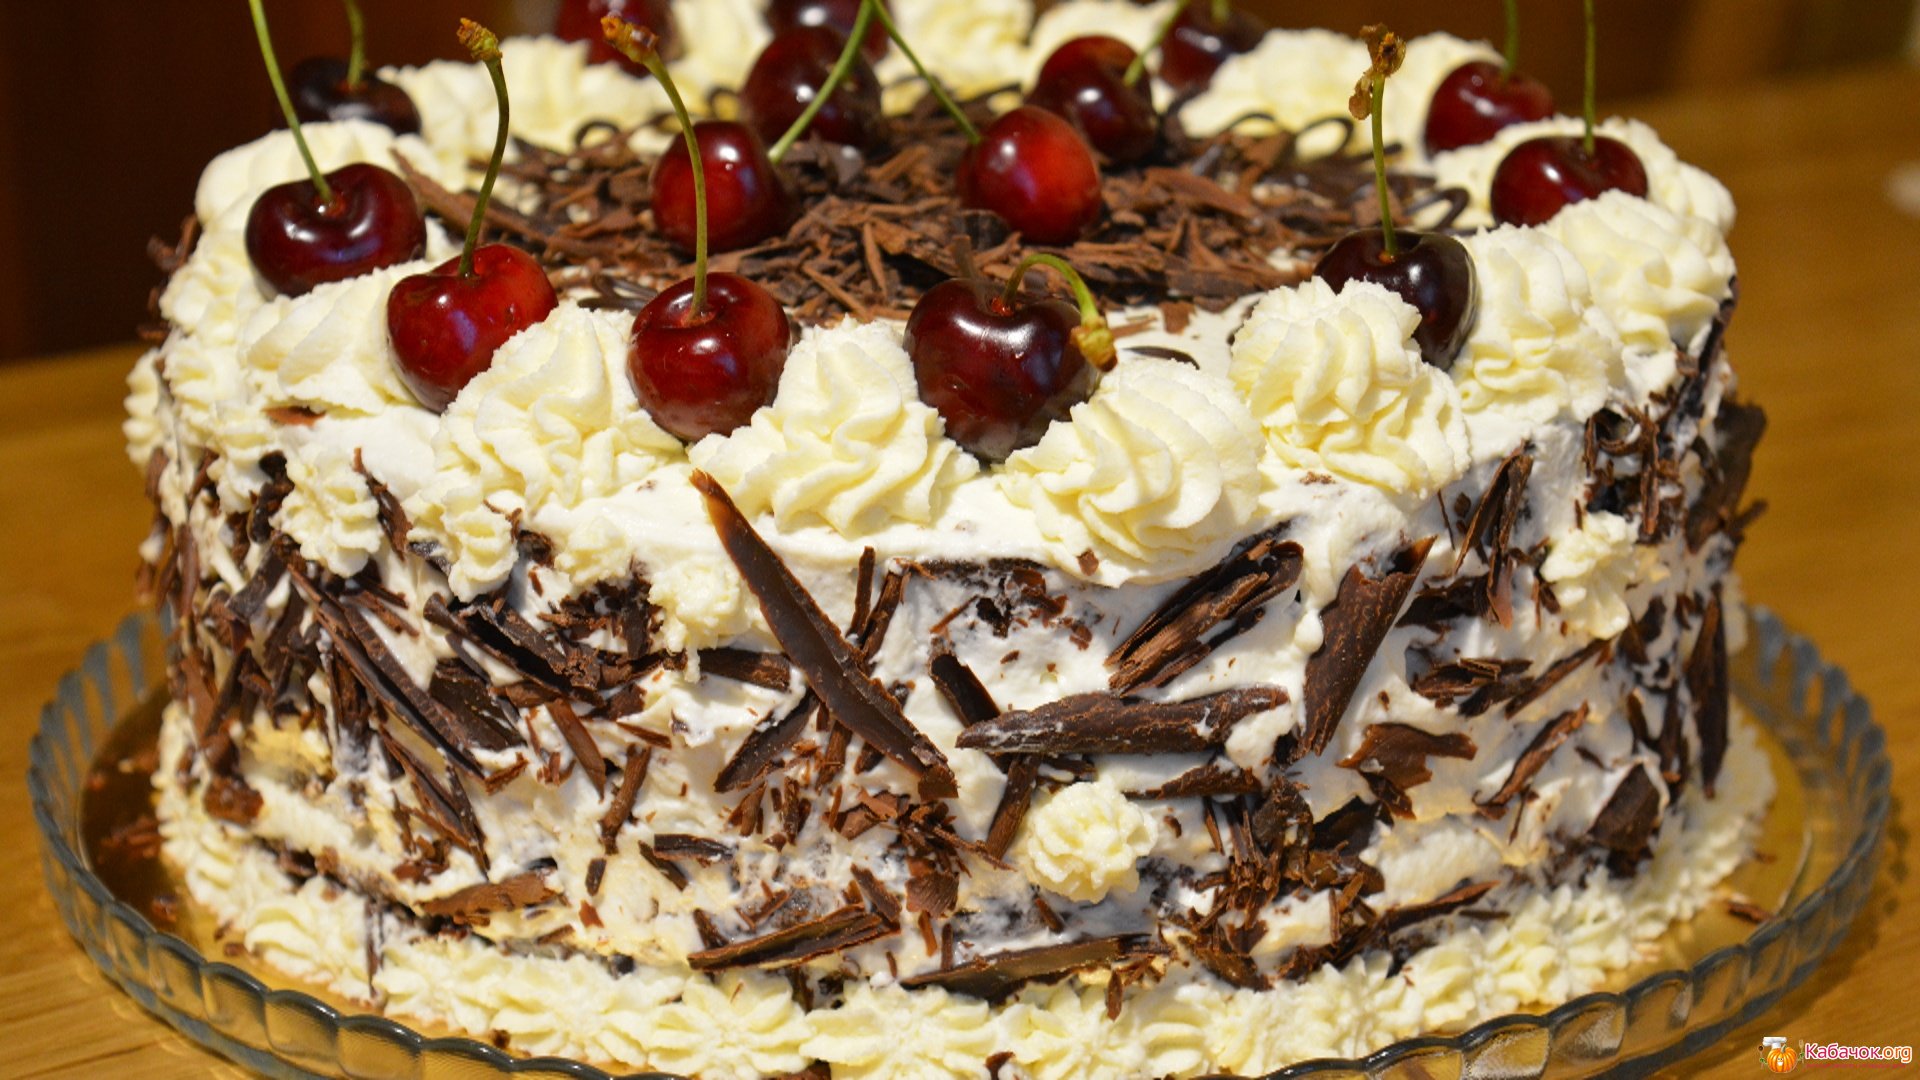 Шоколадный торт с кремом чиз и вишней